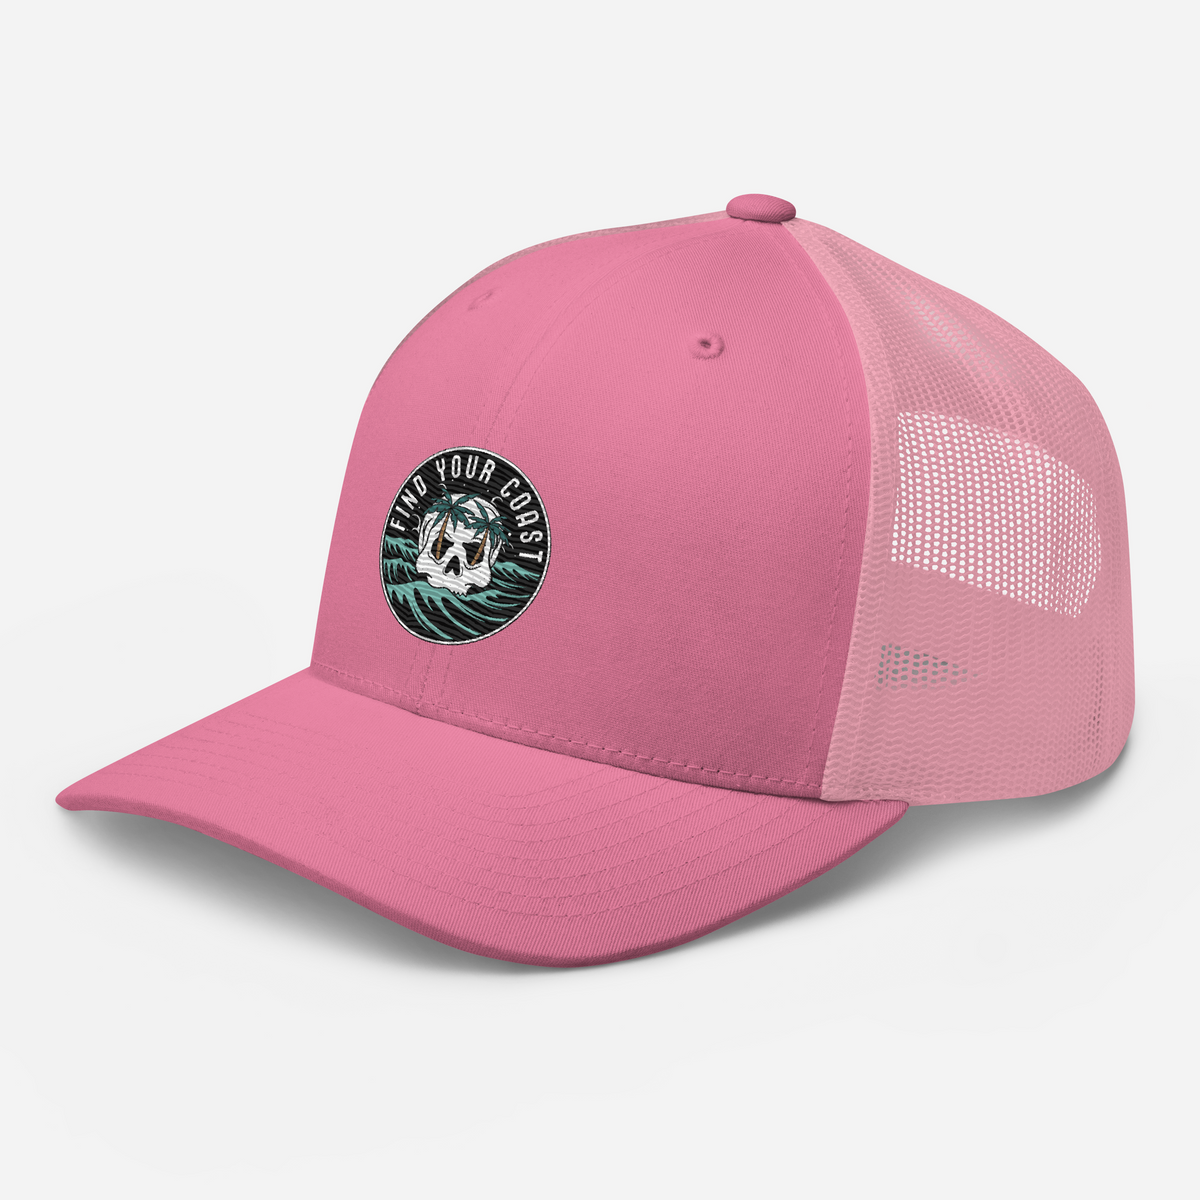 Seaside Beach Mesh Trucker Hat For Men And Women Ideal For